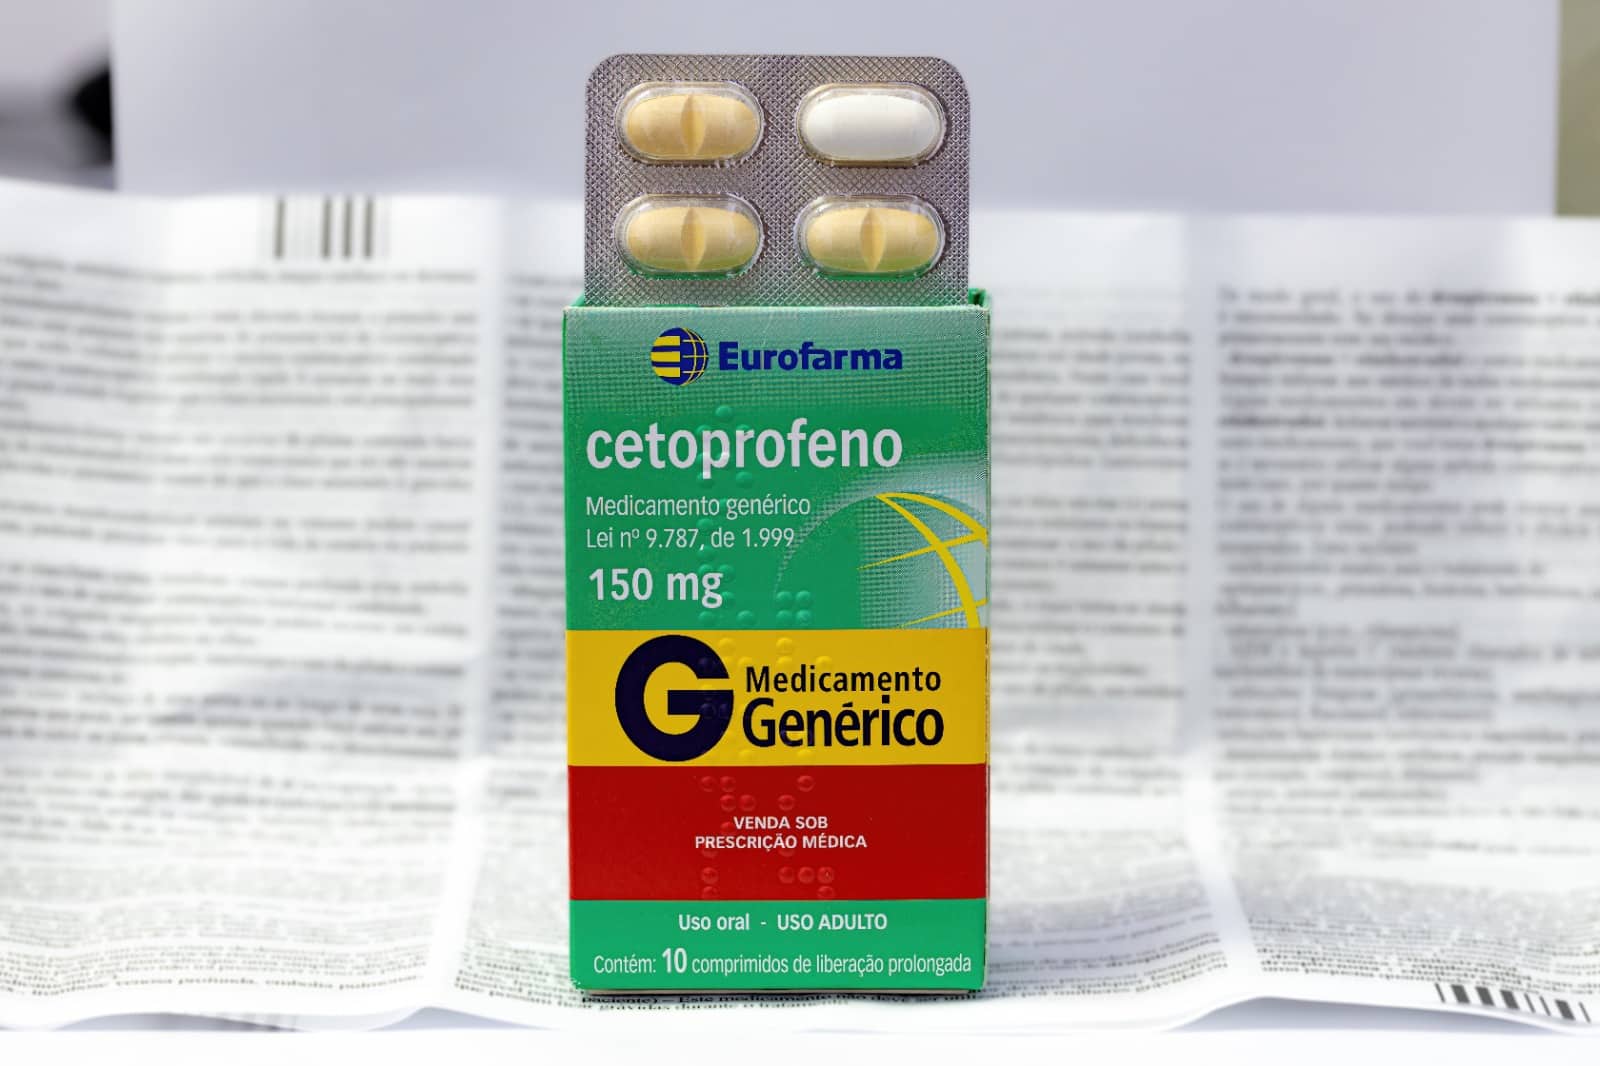 Imagem da caixa e da bula do medicamento Cetoprofeno, um anti-inflamatório não esteroidal usado para tratar dor e inflamação.